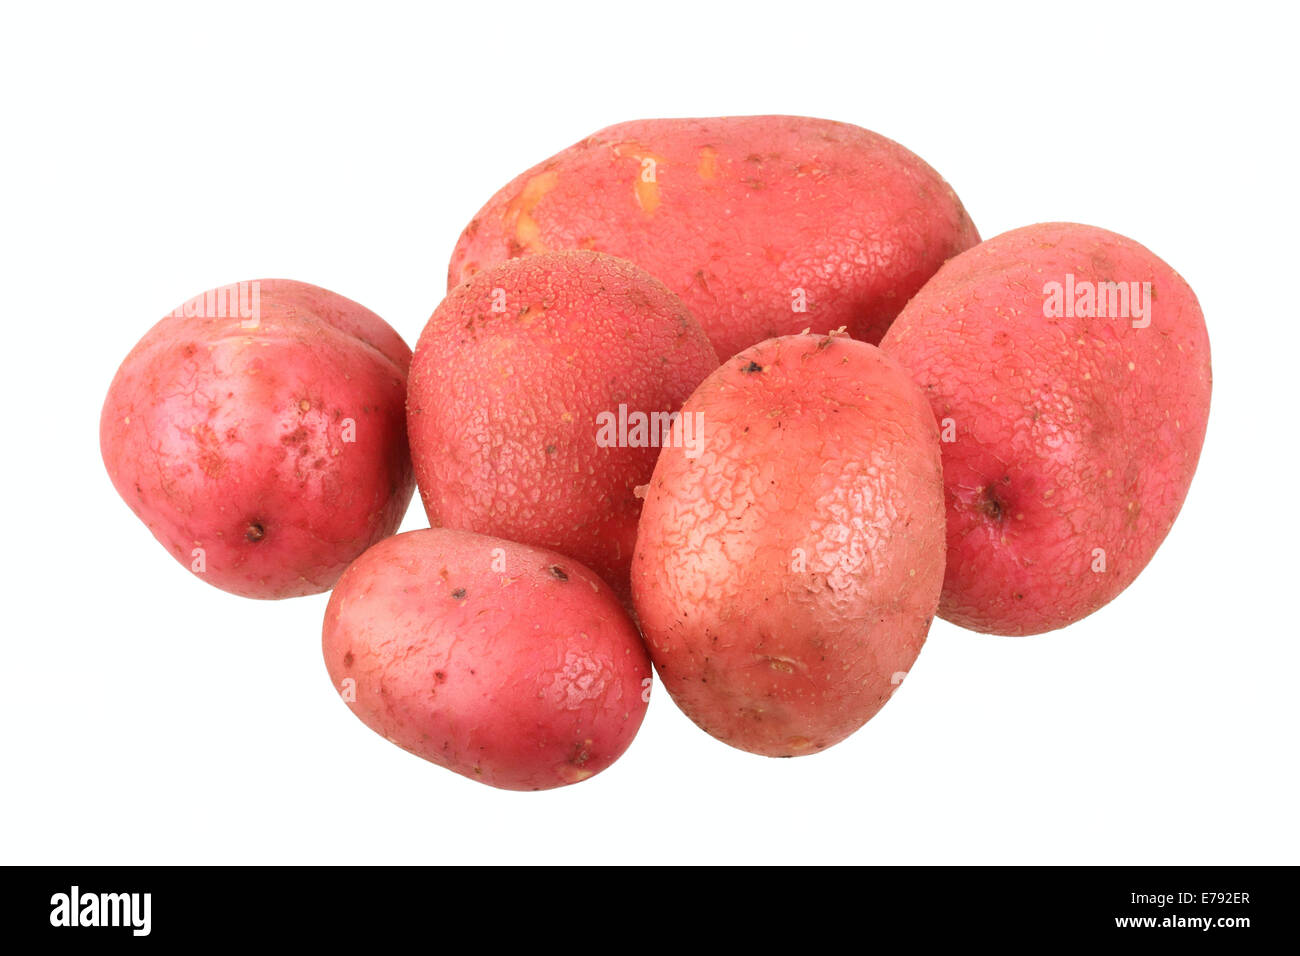 Les pommes de terre, variétés de fantaisie rouge Banque D'Images